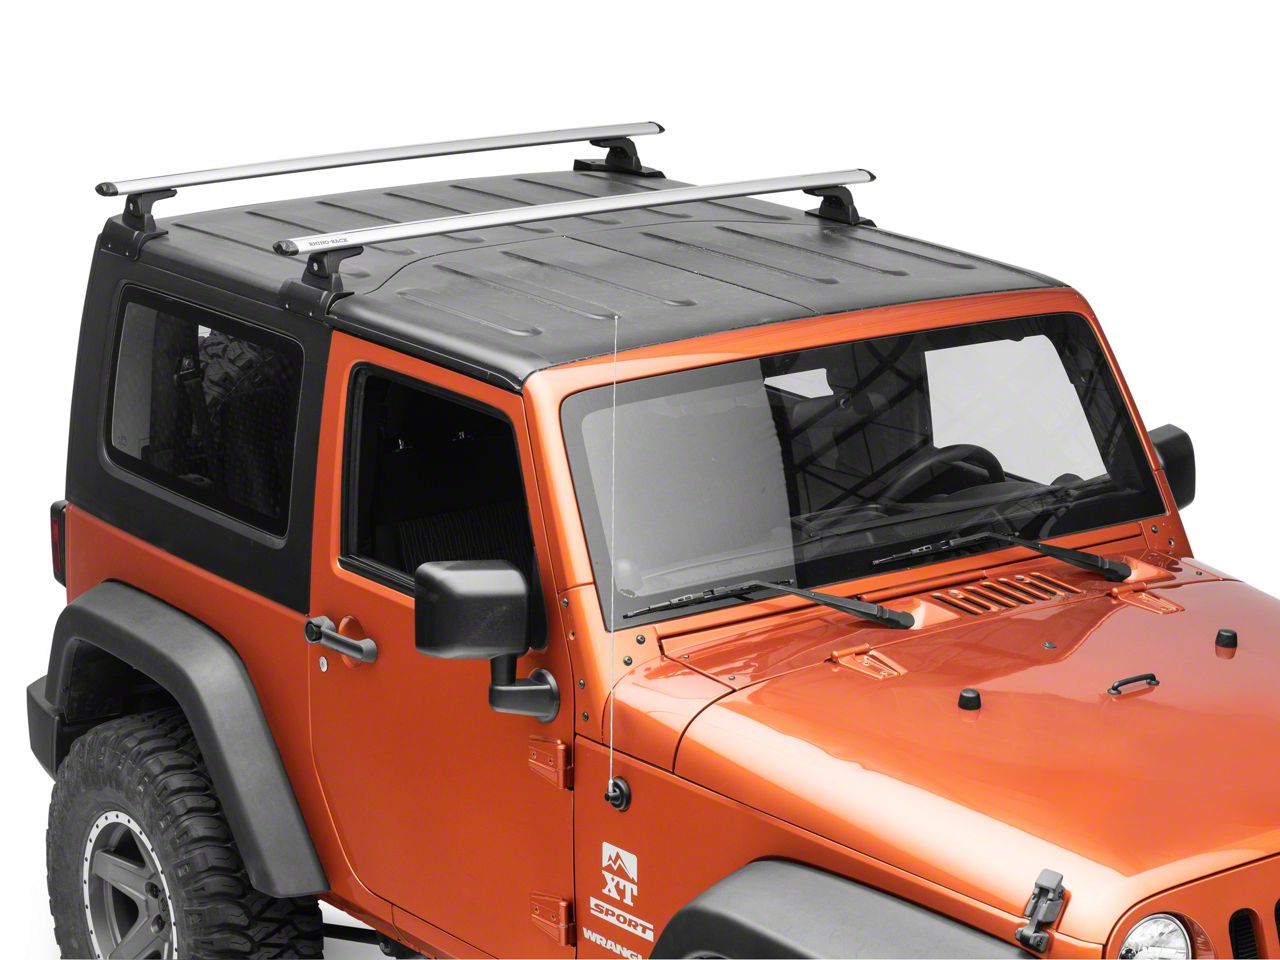 2P Fits for Jeep Wrangler JK JL Unlimited 2 4 Doors 2007-2020 Cross Bar Crossbar